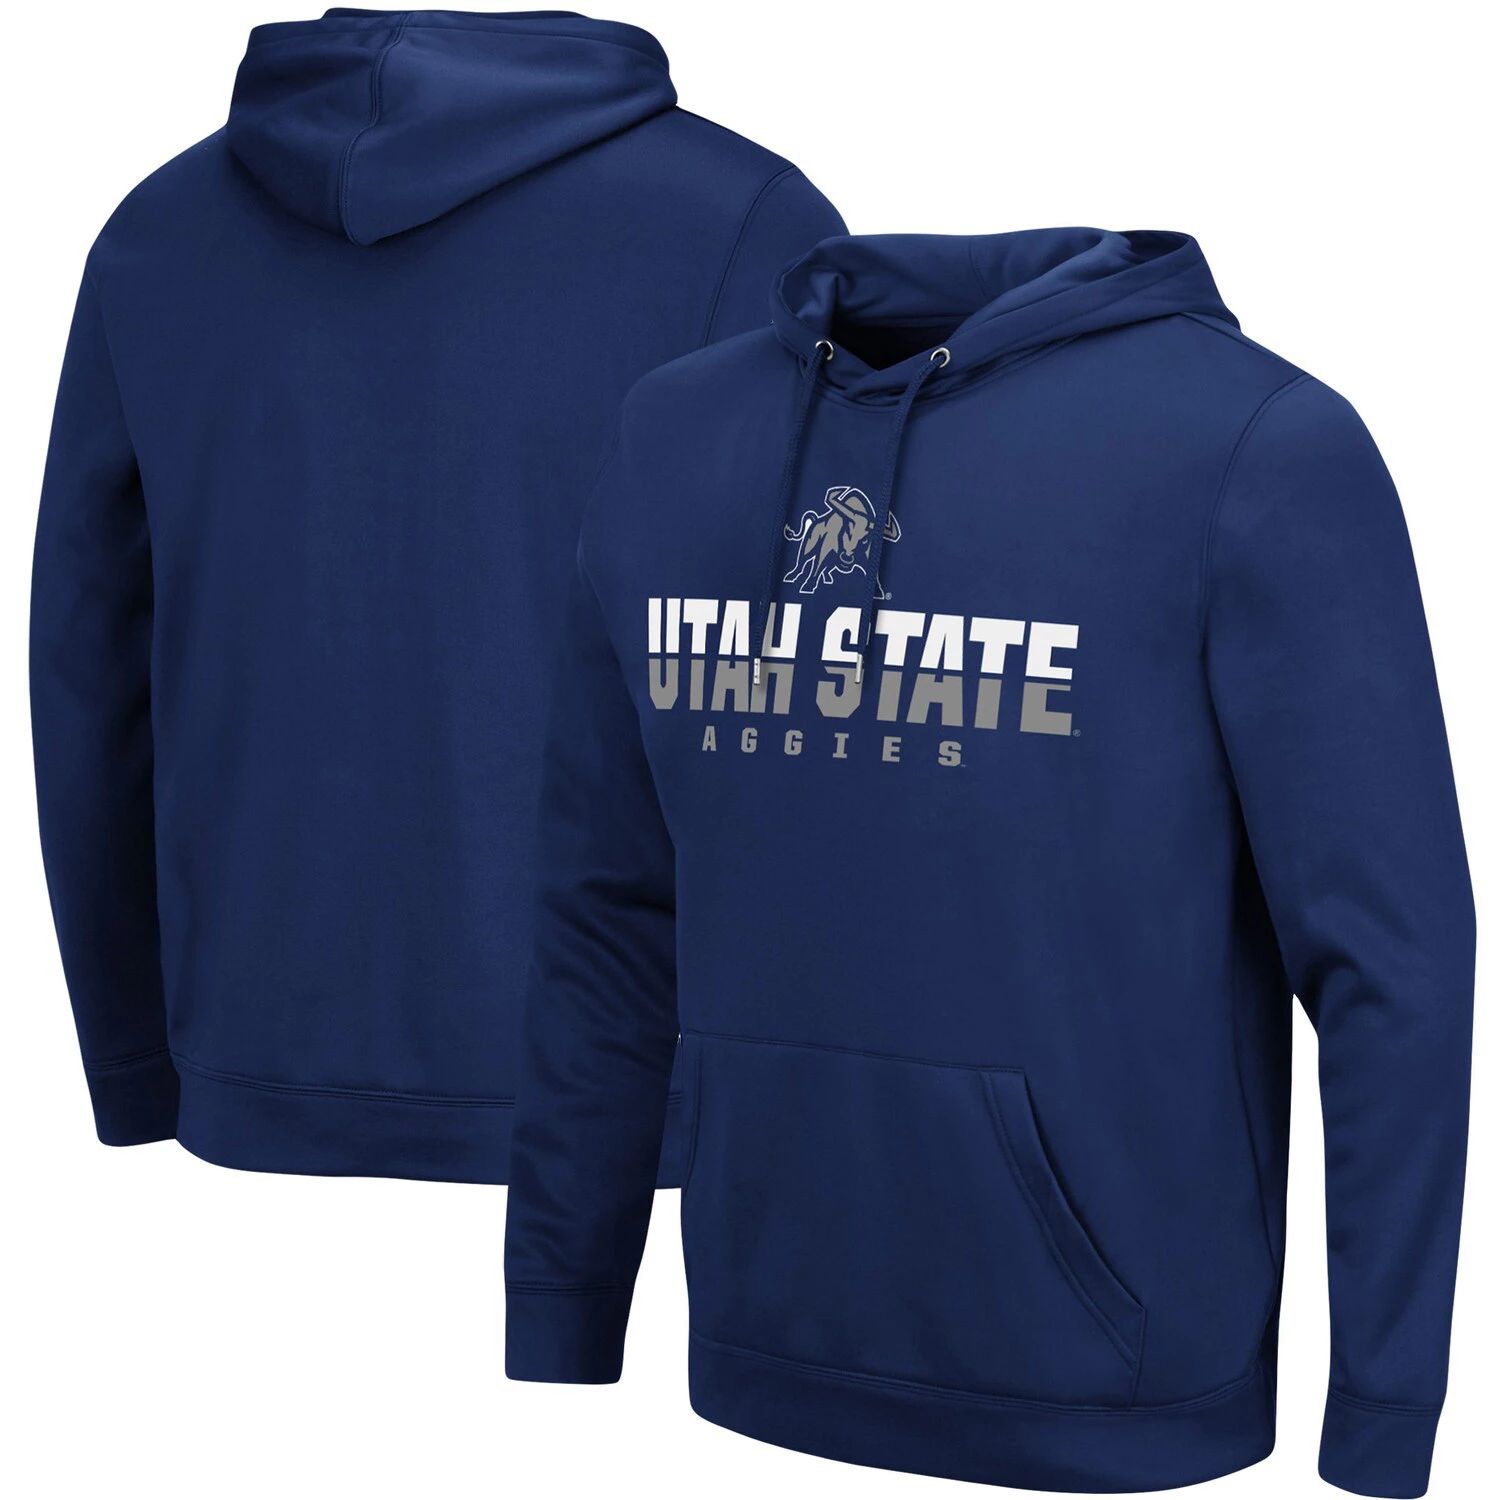 Мужской пуловер с капюшоном Colosseum темно-синего цвета штата Юта Aggies Lantern